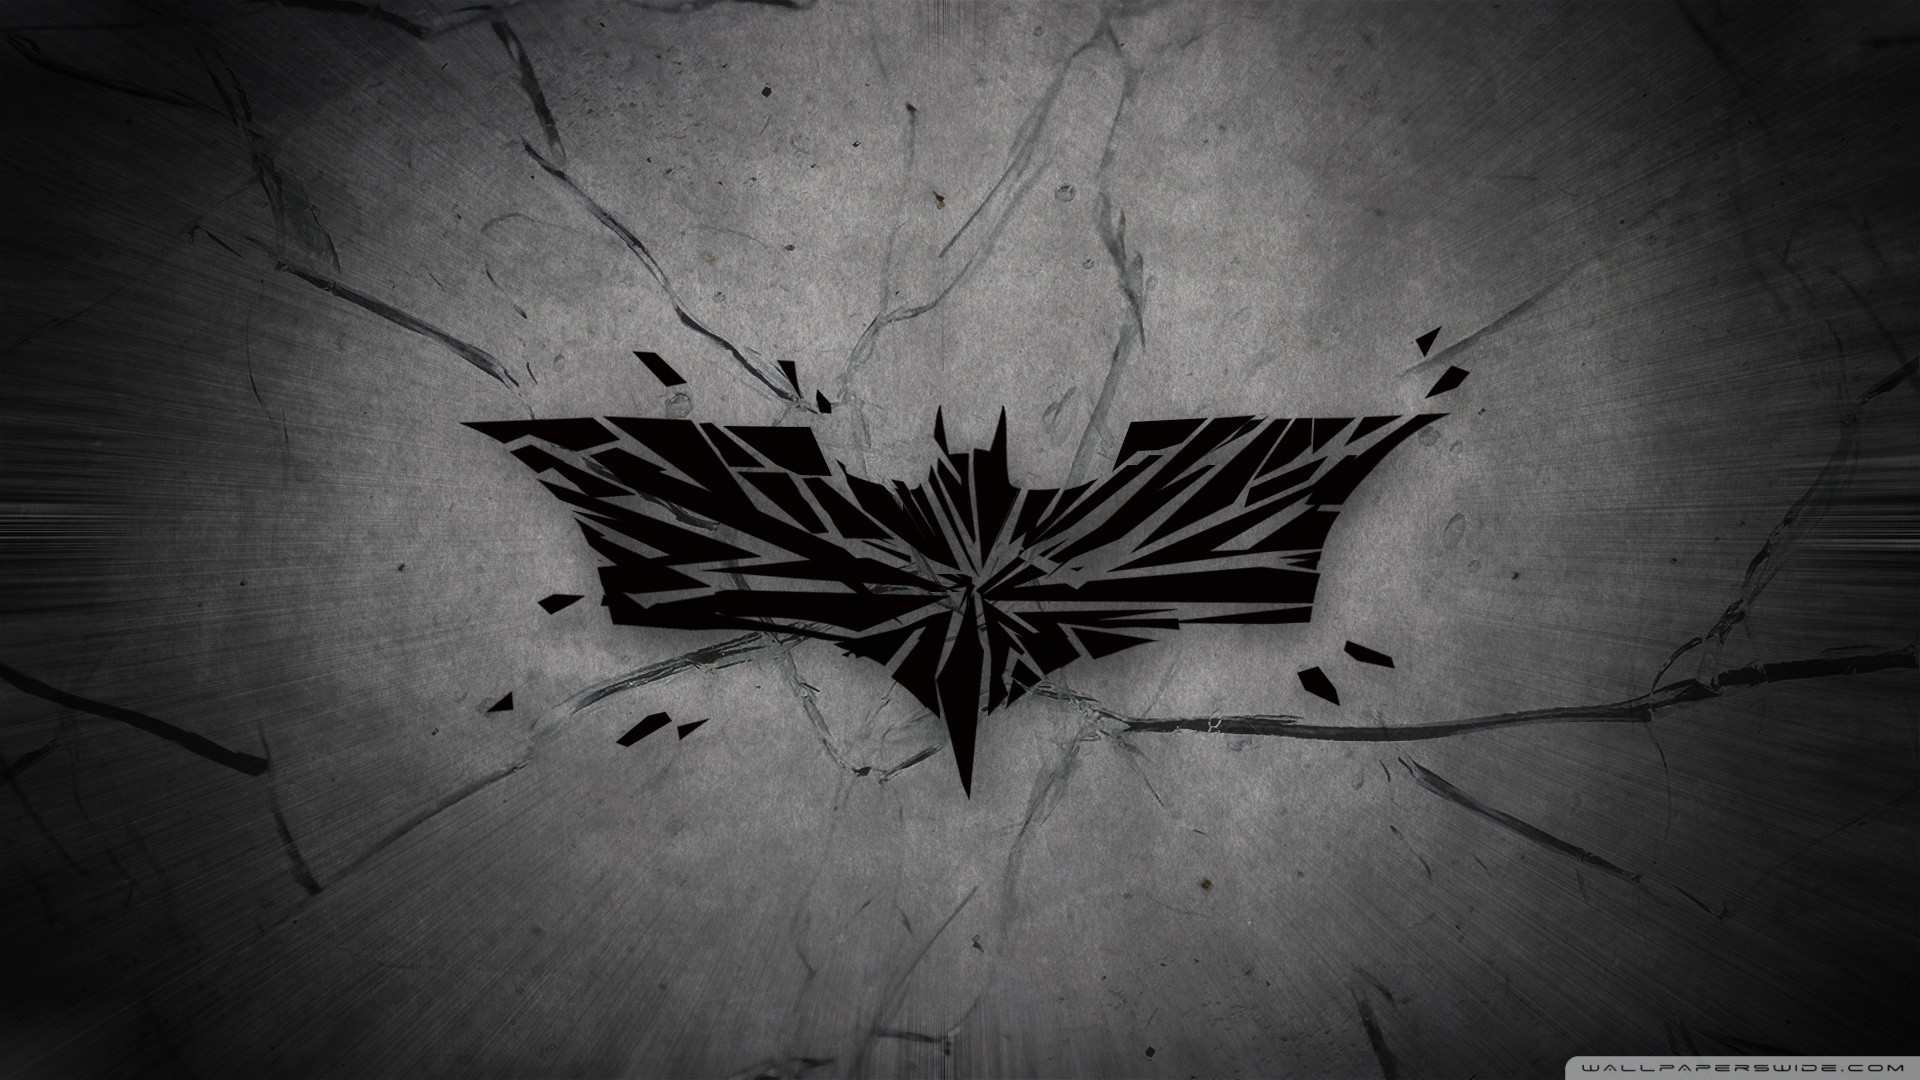 hd wallpapers batman desktop - Wallumi | Batman wallpaper, Nightwing  wallpaper, Logo wallpaper hd